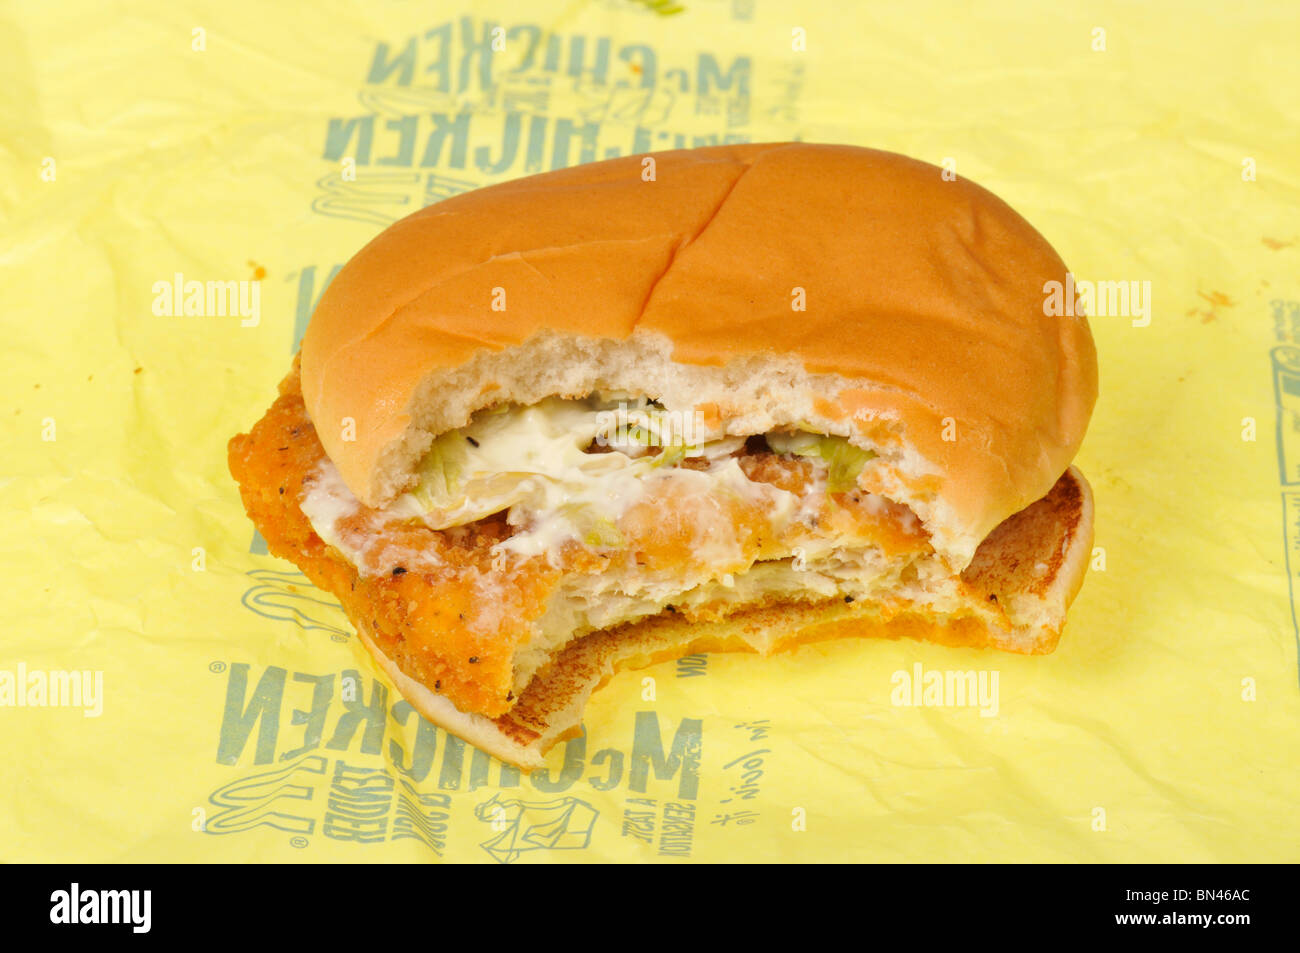 McDonalds Mcchicken Sandwich auf Wrapper mit Biss, die es auf der Verpackung entnommen. Stockfoto